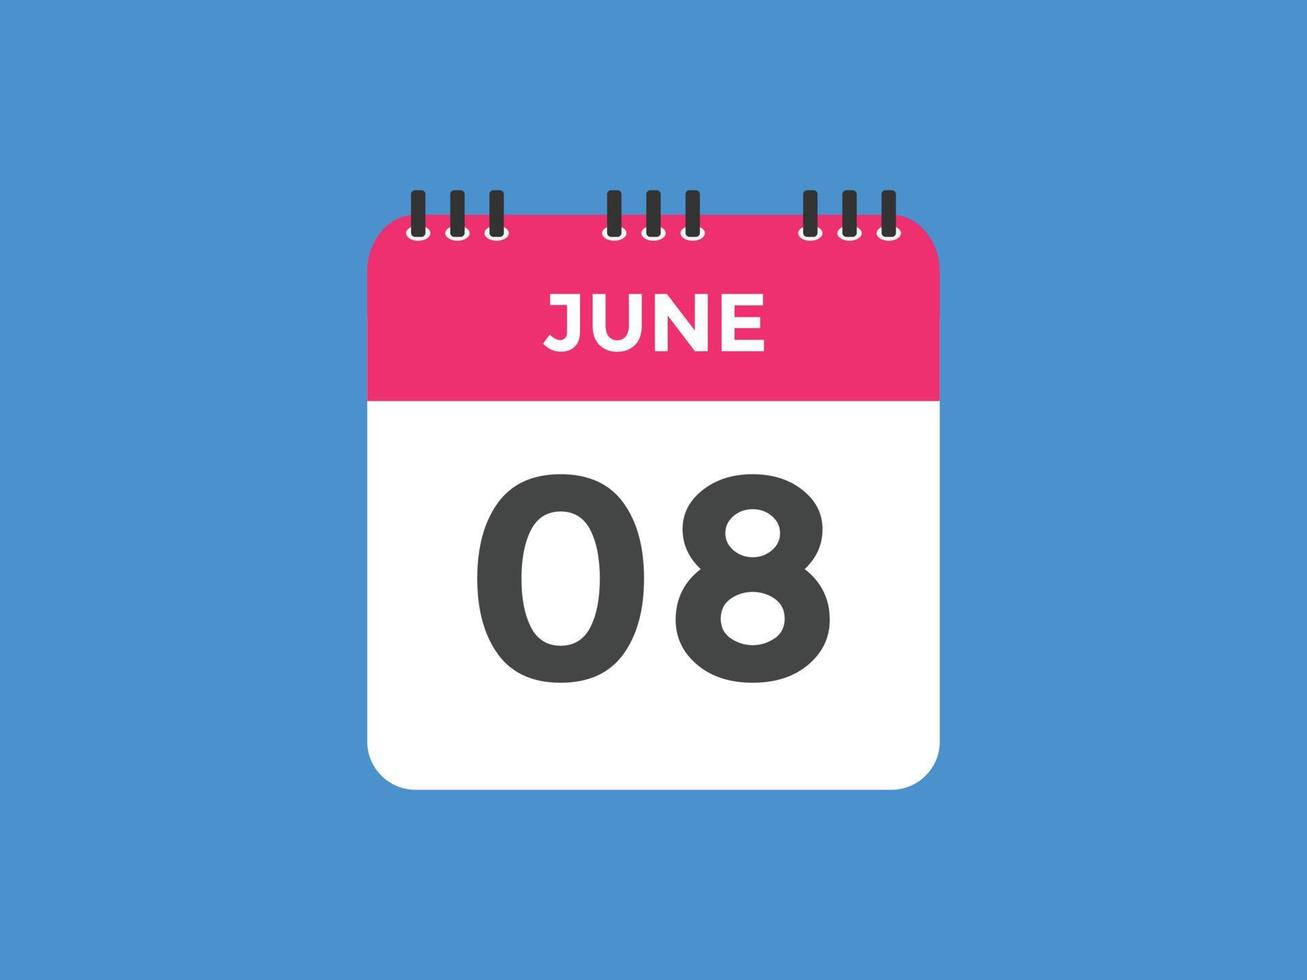 lembrete de calendário de 8 de junho. 8 de junho modelo de ícone de calendário diário. modelo de design de ícone de calendário 8 de junho. ilustração vetorial vetor